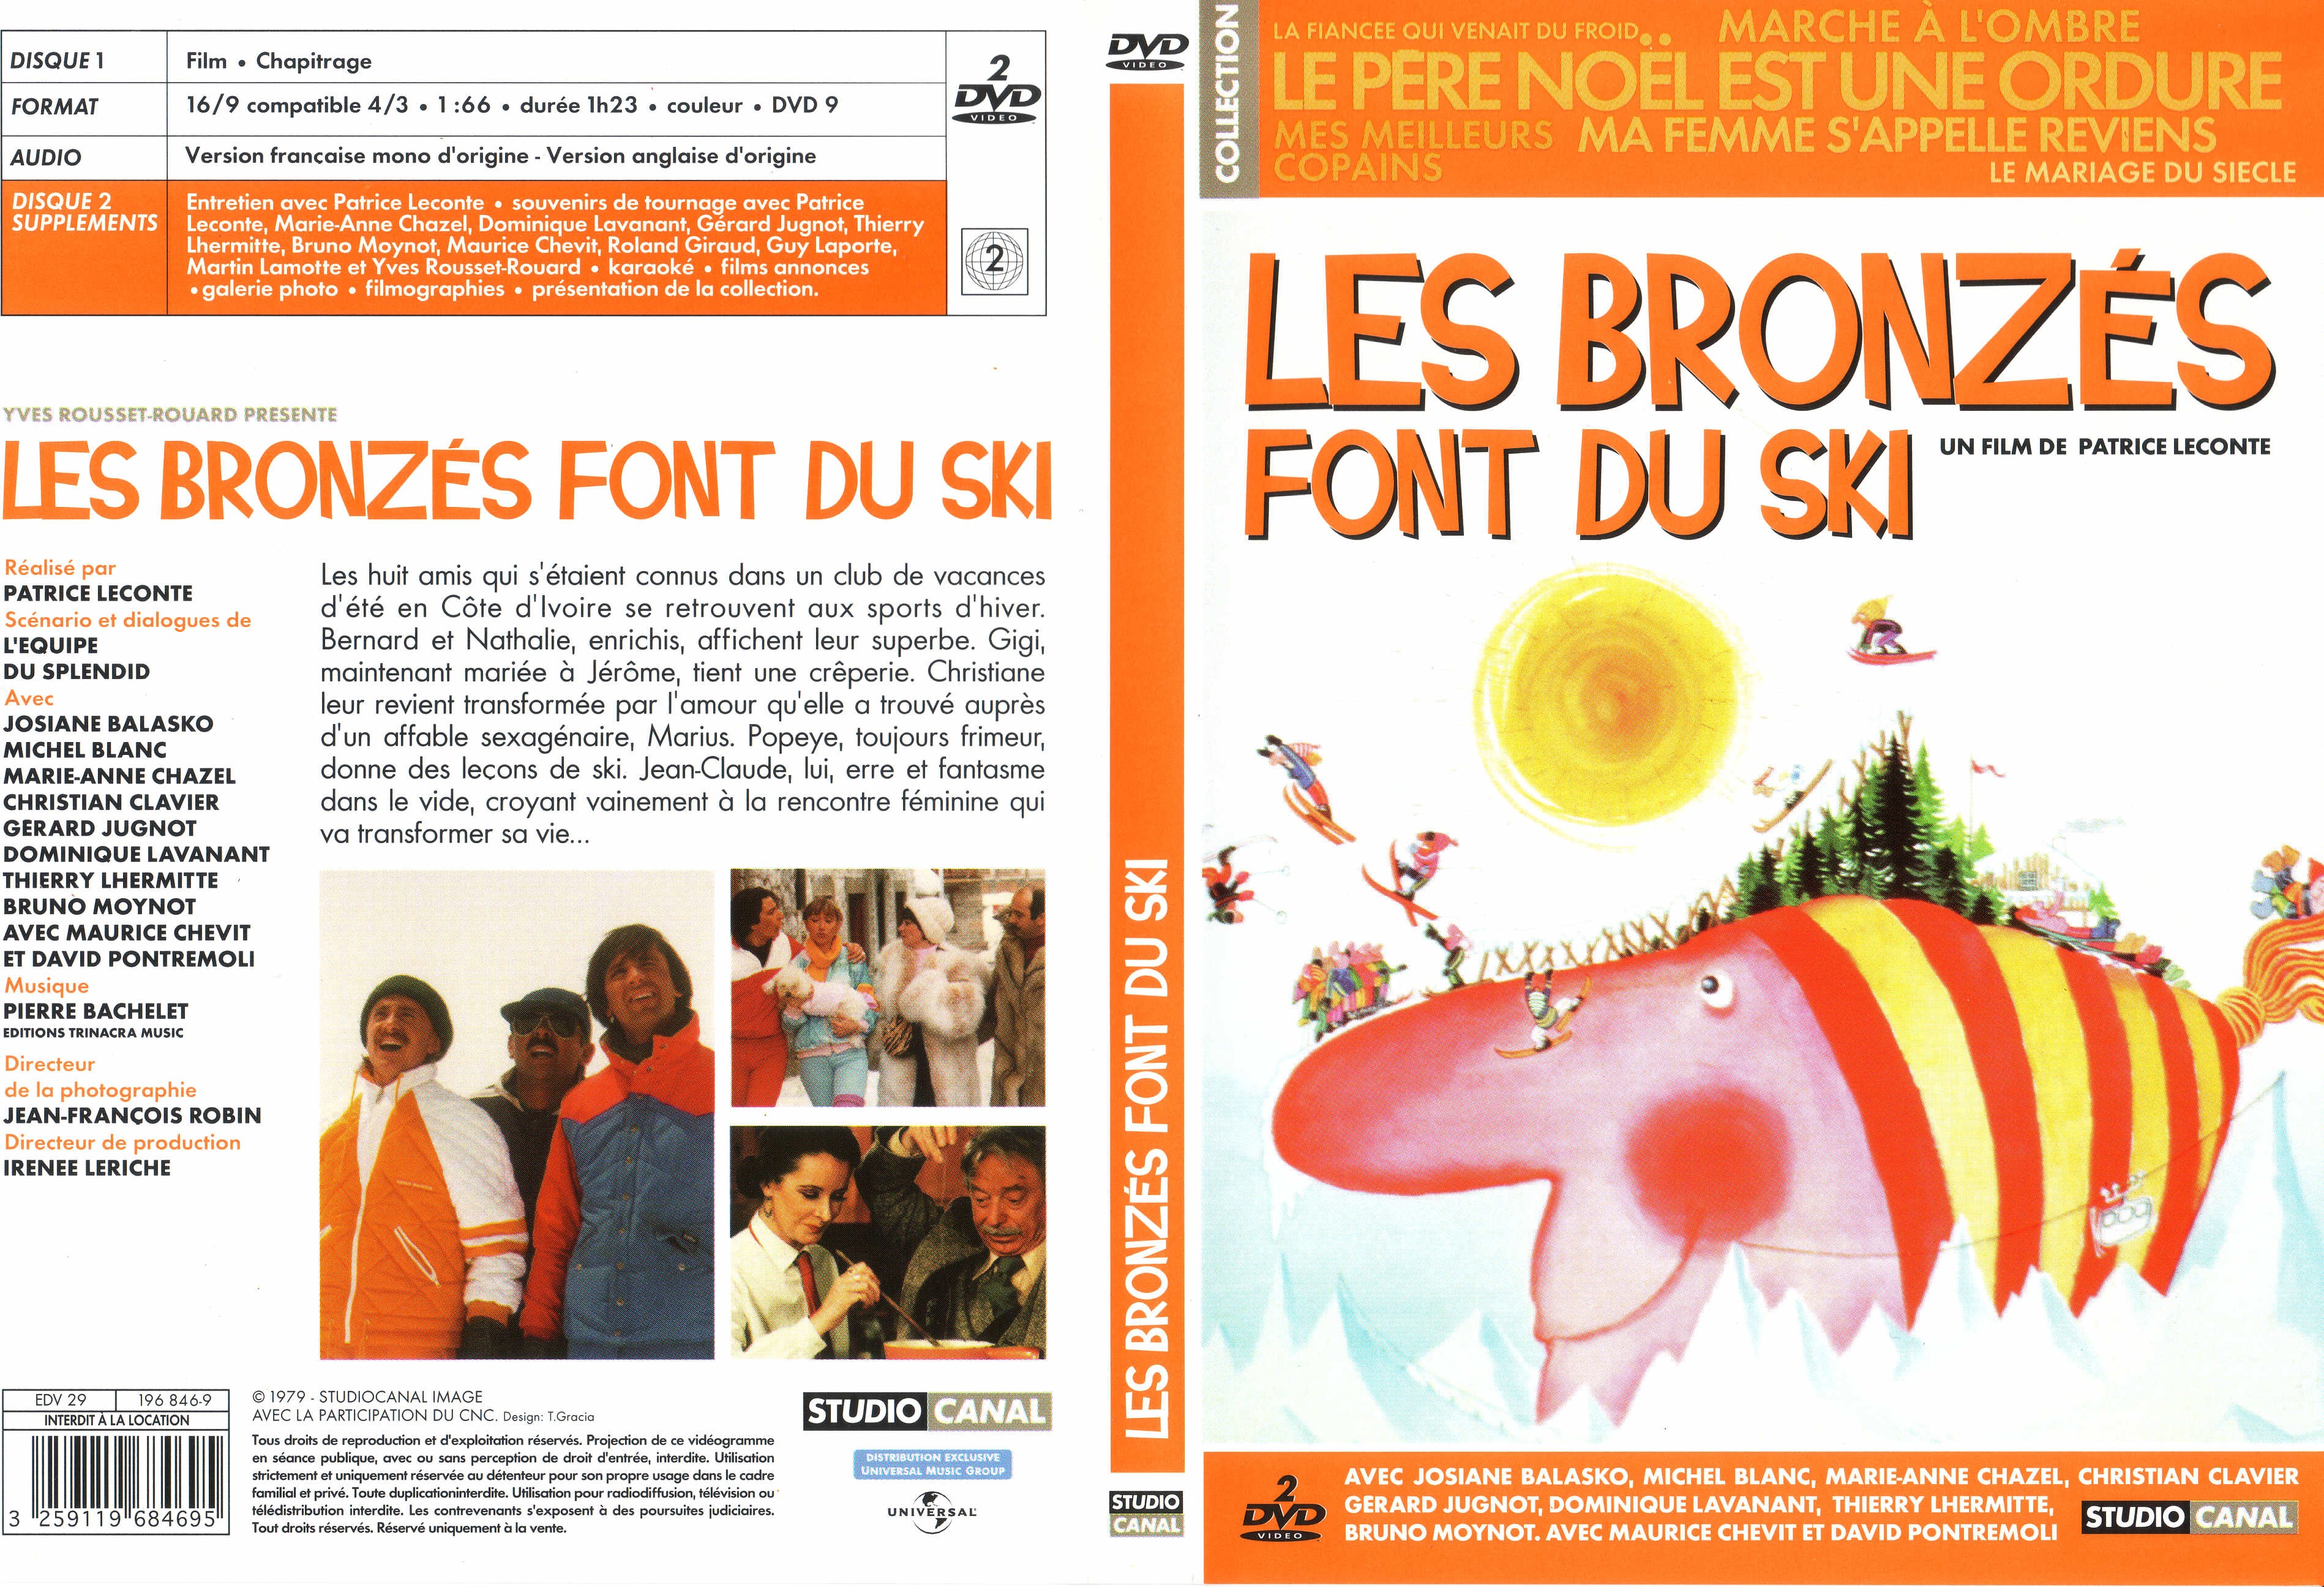 Jaquette DVD Les bronzes font du ski v2